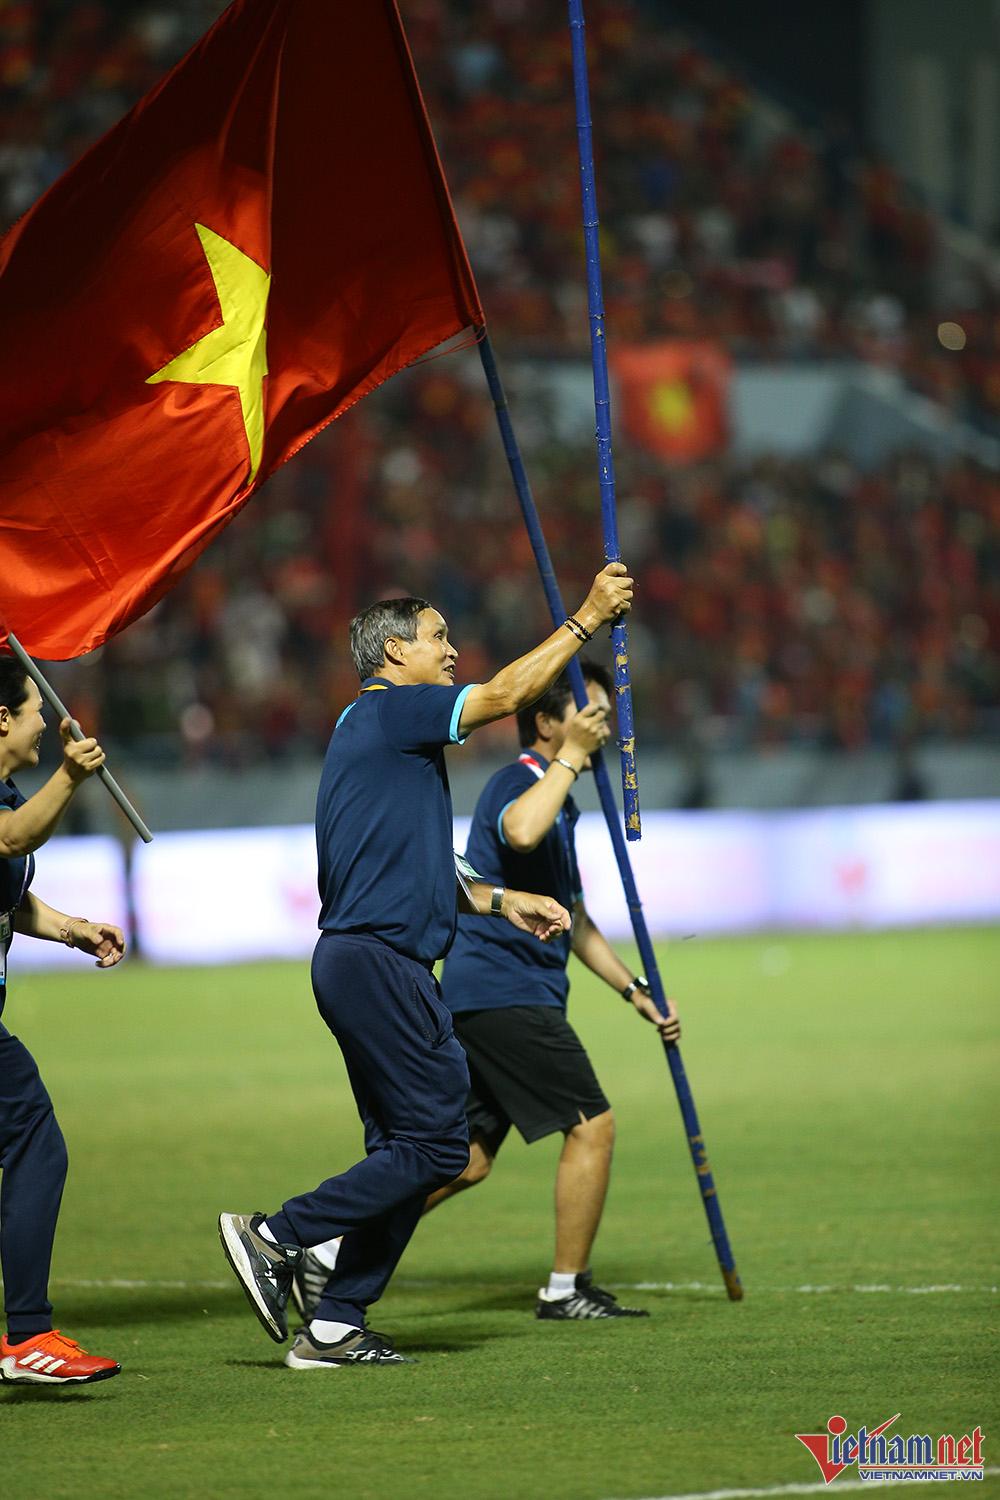 Xúc động hình ảnh cầu thủ nữ Việt Nam cắm cờ Tổ quốc trên bục nhận huy chương - Ảnh 3.